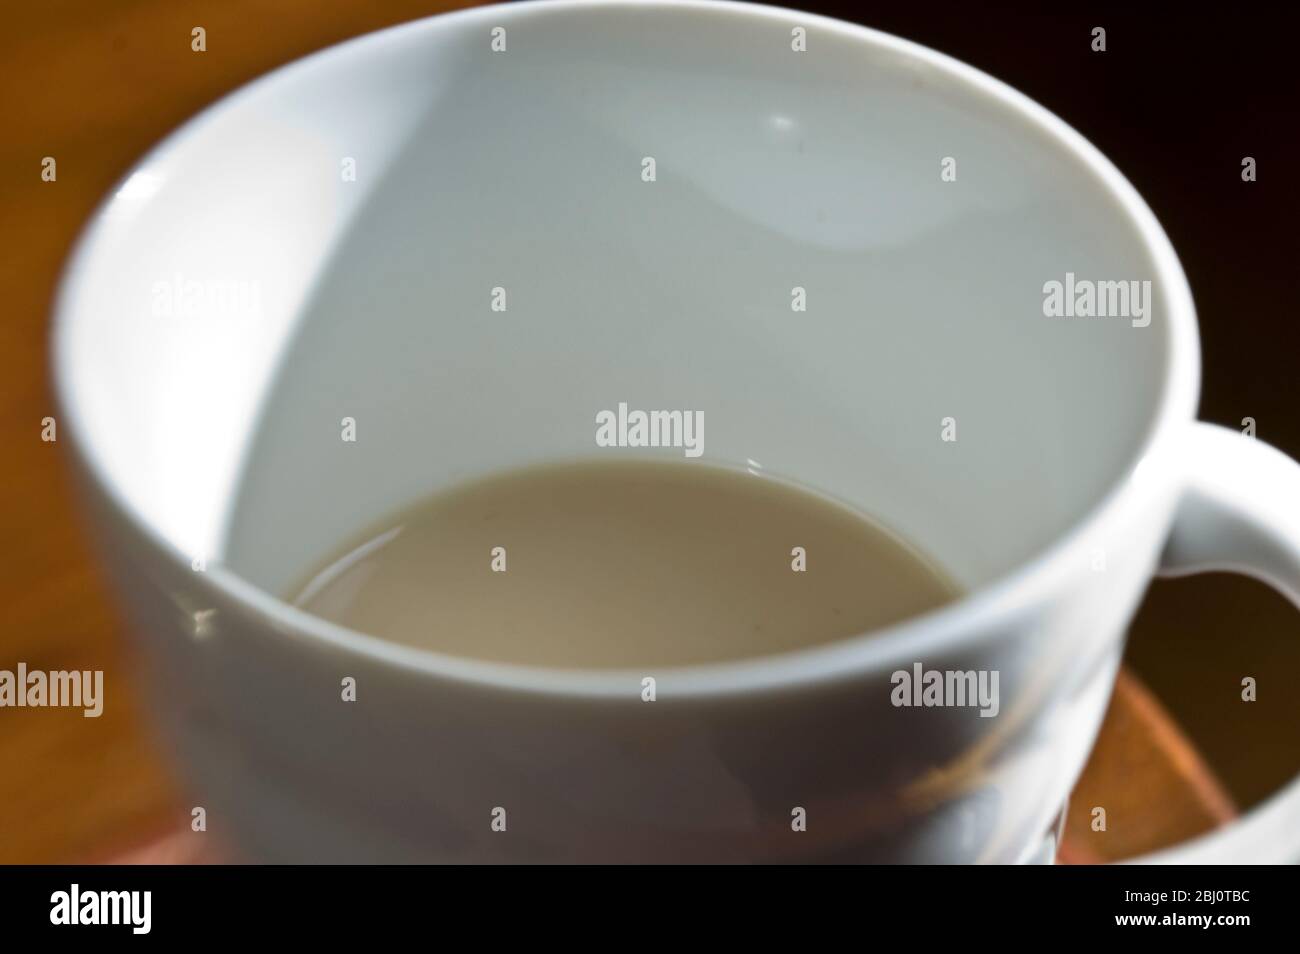 Nahaufnahme eines Tasses milchigen Tees, der durch die Lensbaby-Linse für zusätzliche Lensunschärfe aufgenommen wurde - Stockfoto